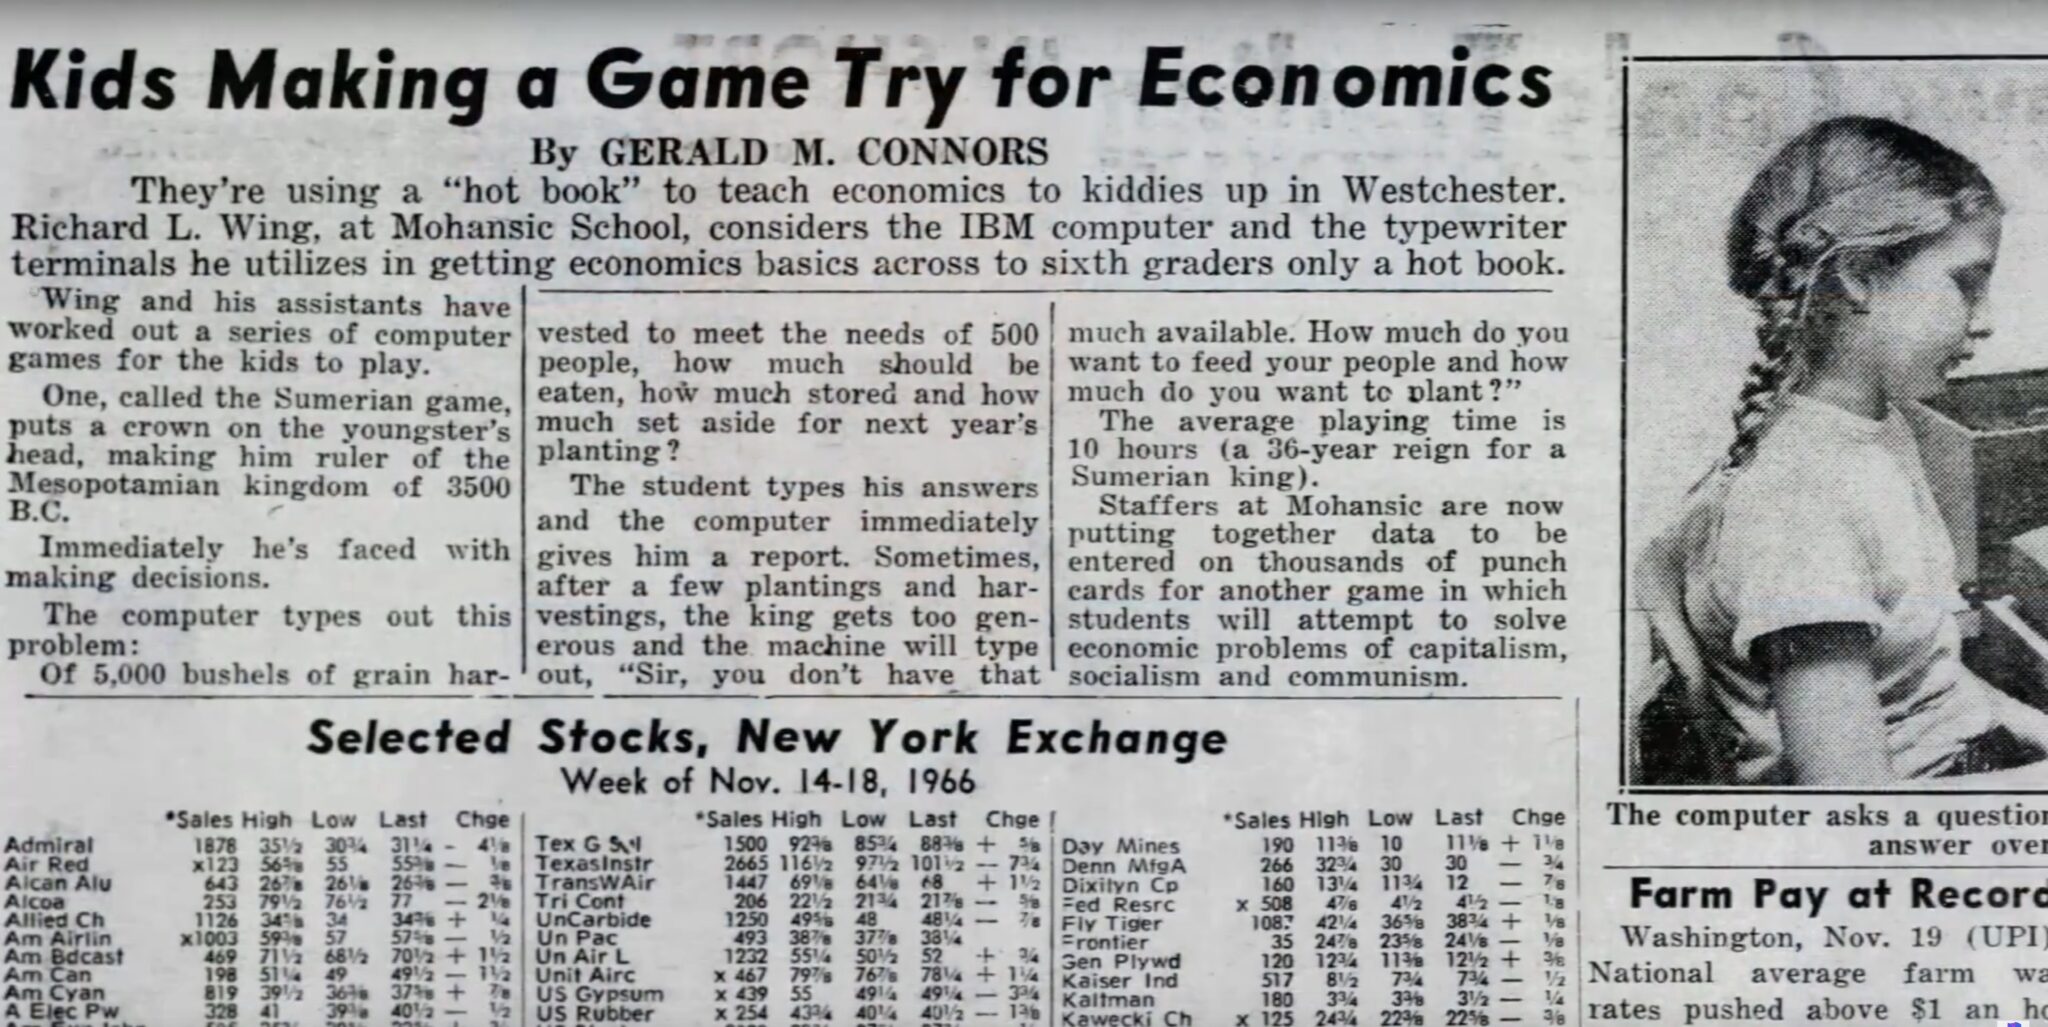 (Sumerská hra se také objevuje v obchodní rubrice různých novin, zde v listopadu 1966. Akcie Texas Instruments je právě na 101 amerických dolarech.)